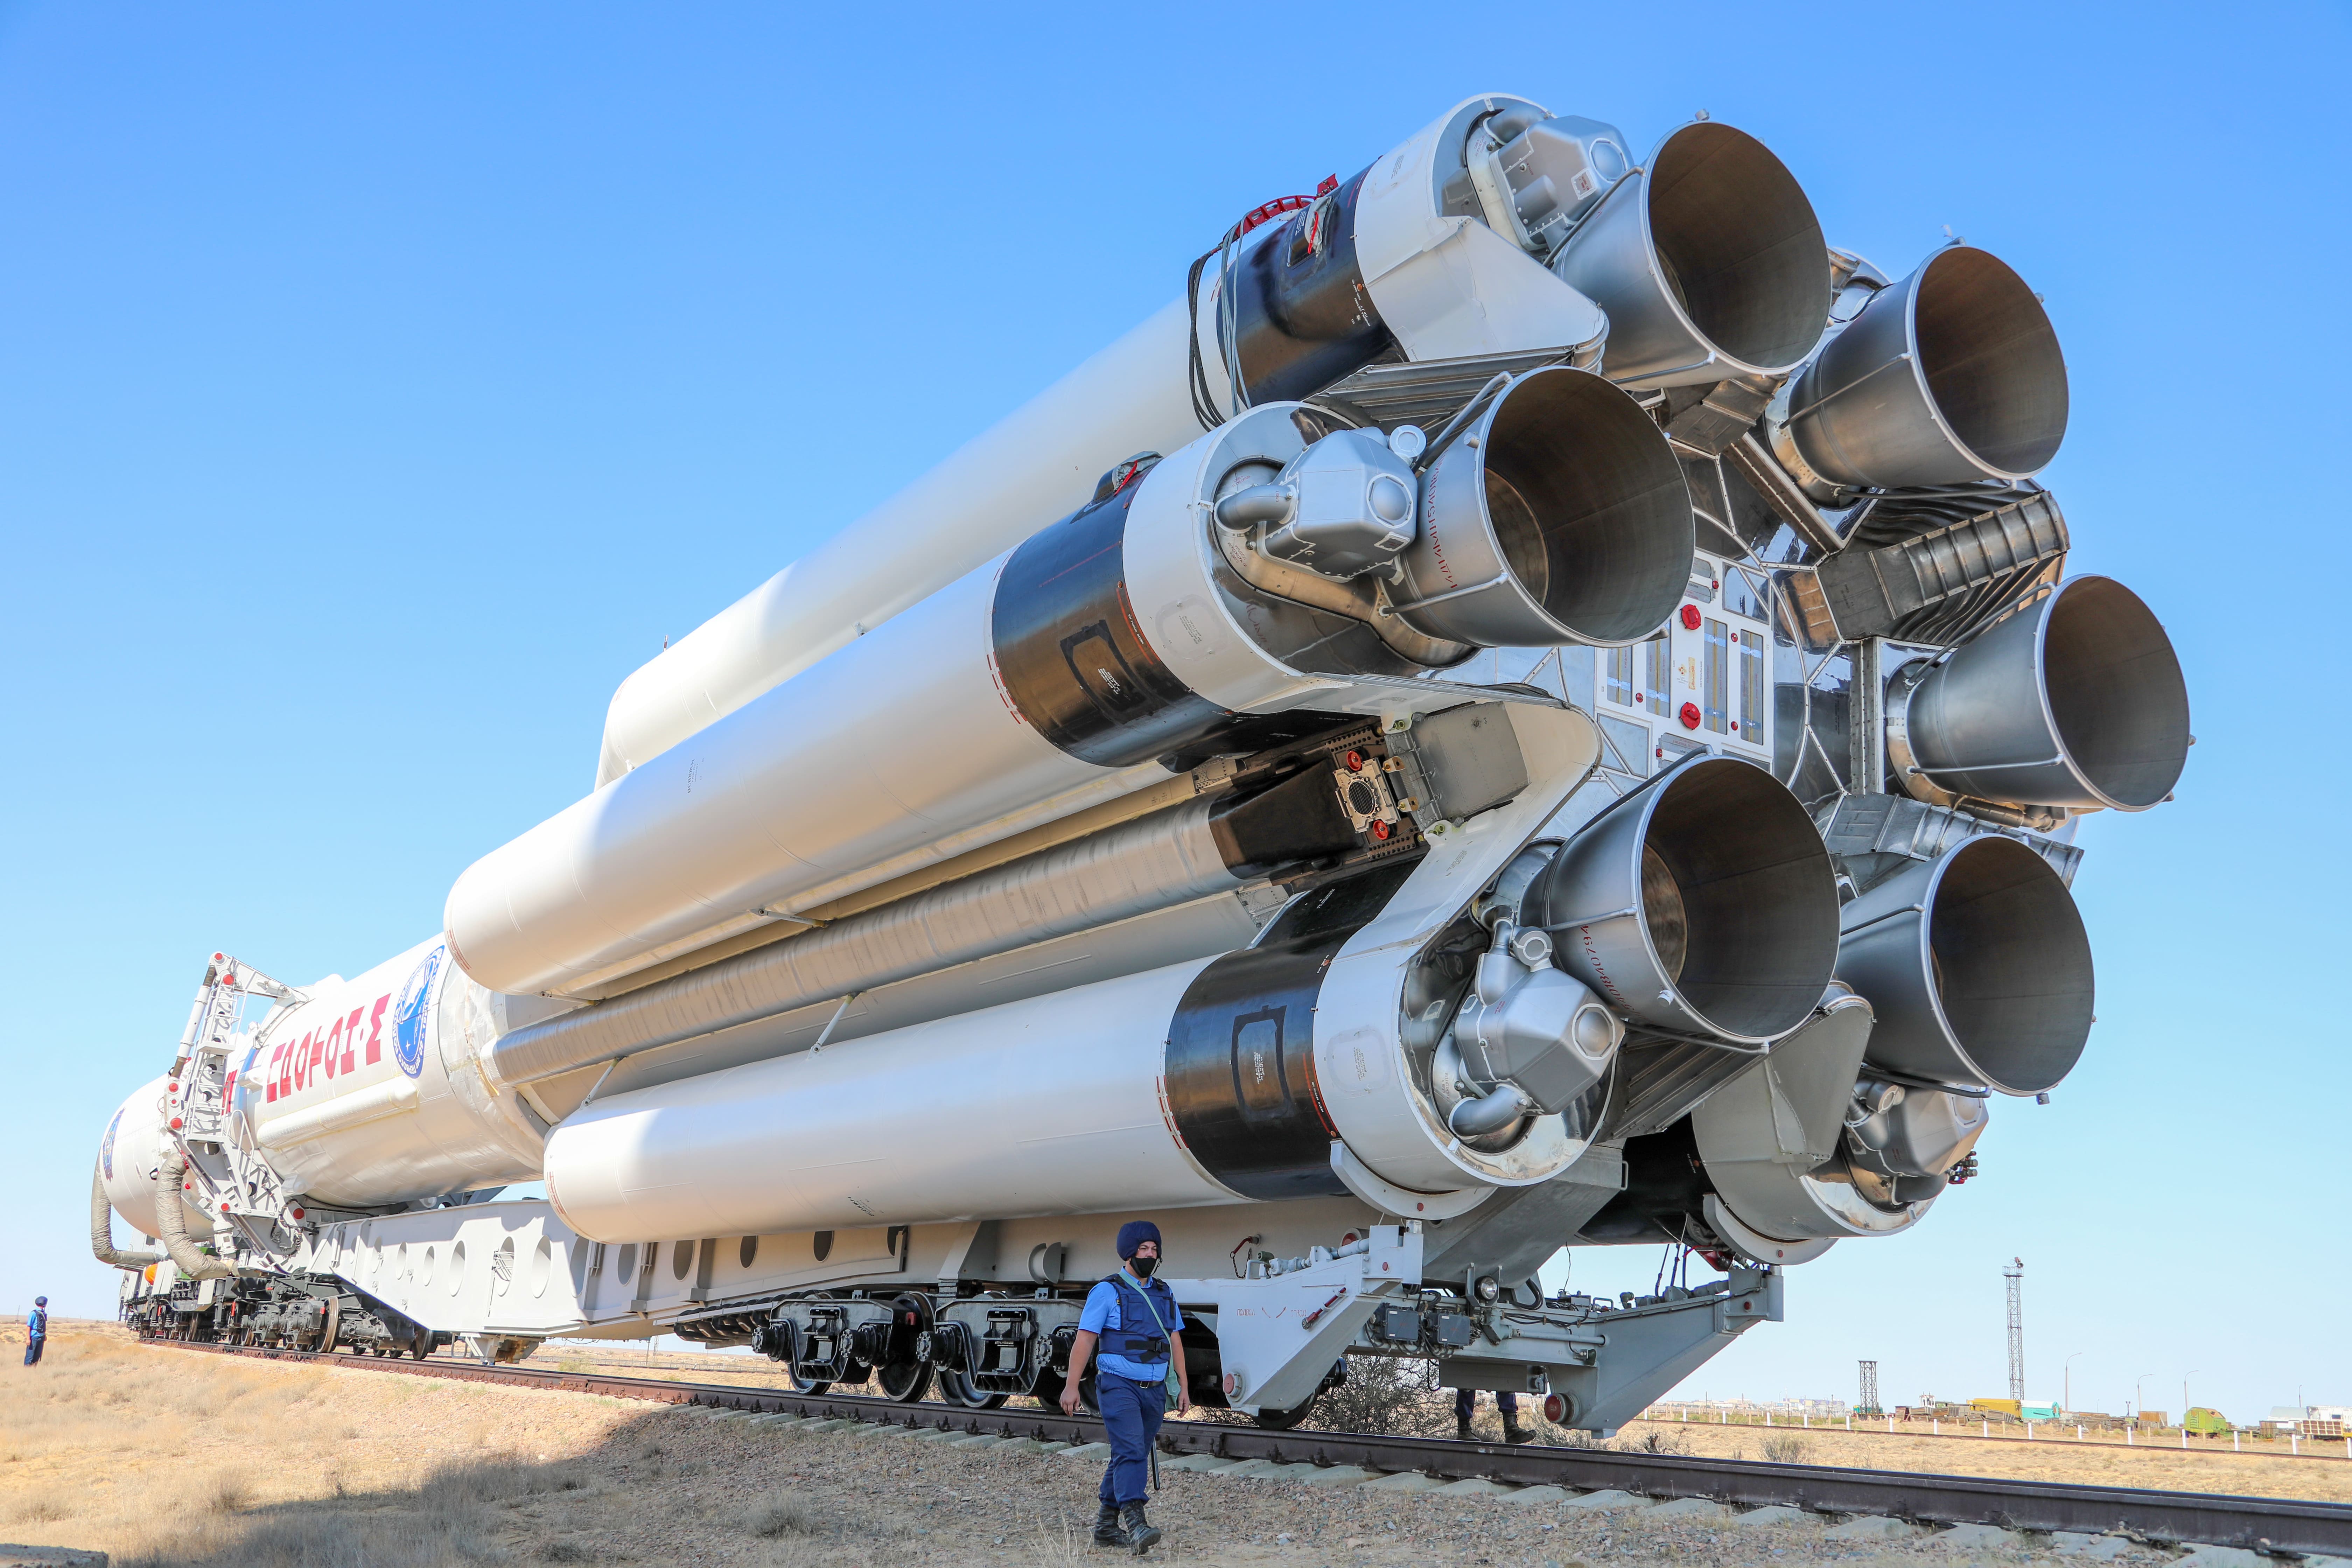 Russia Launches Nauka Multipurpose Lab to ISS